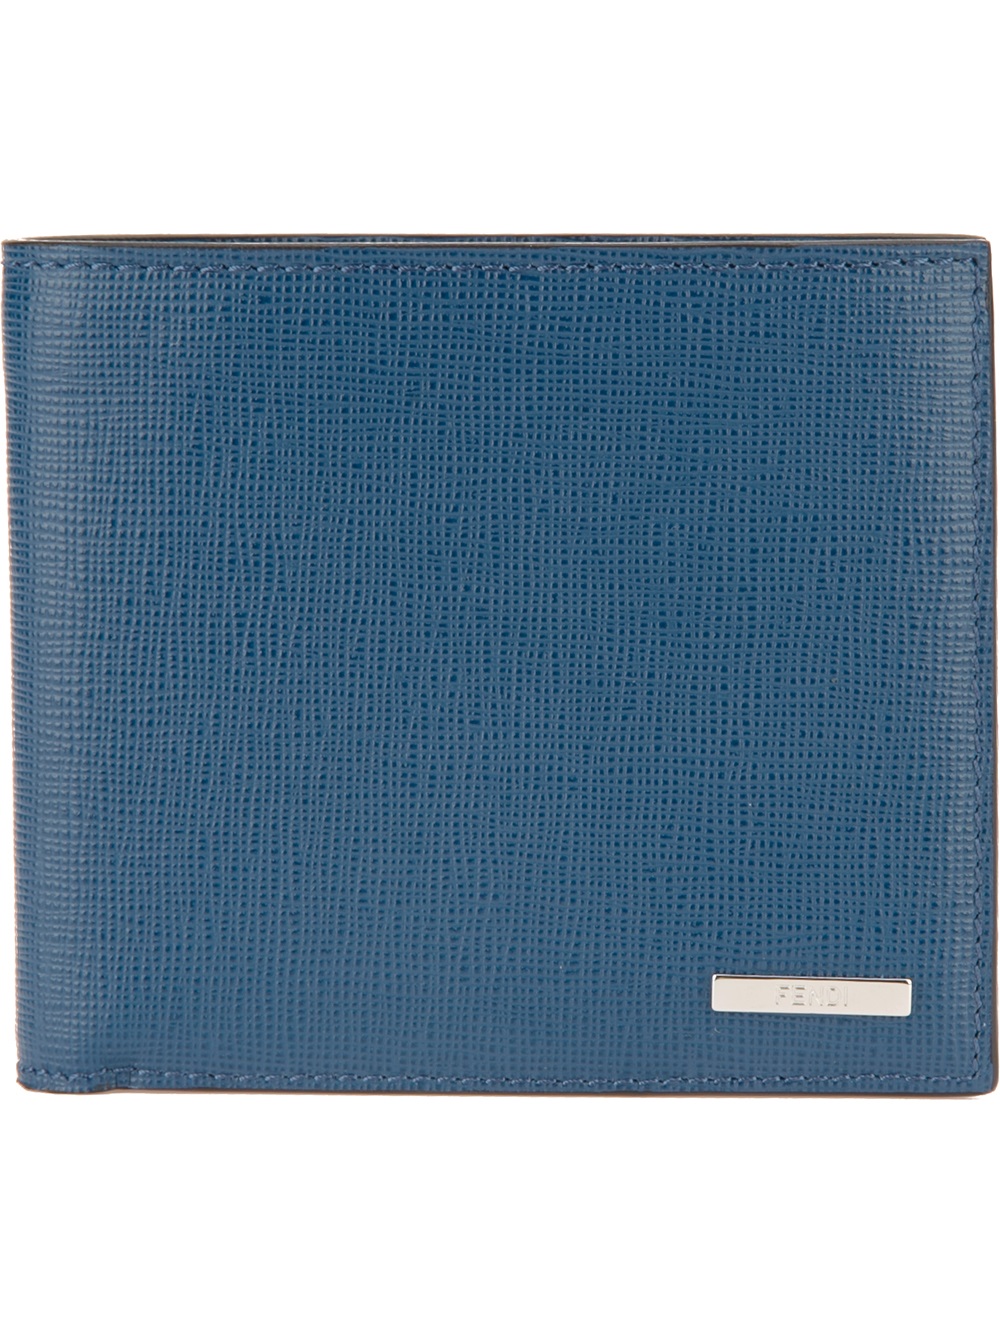 Fendi Bifold Wallet in Blue for Men | Lyst